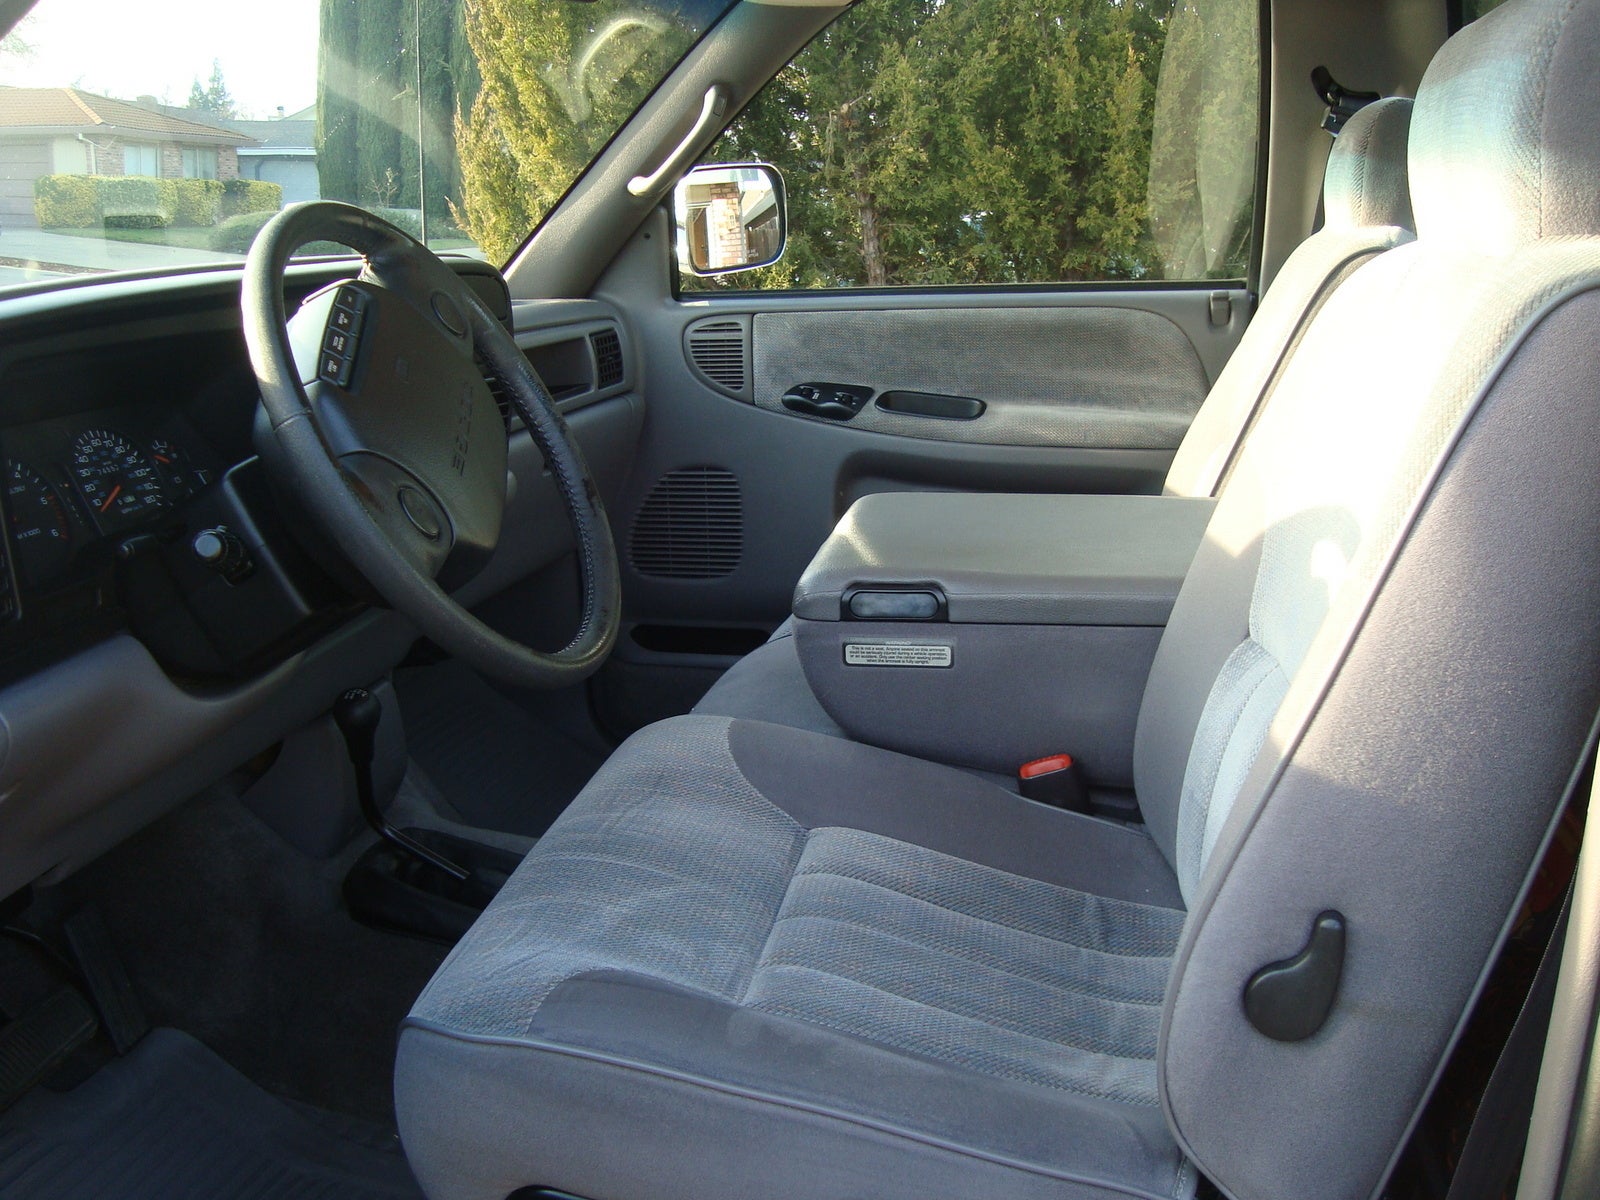 1995 Dodge Ram 1500 Interior Pictures Cargurus